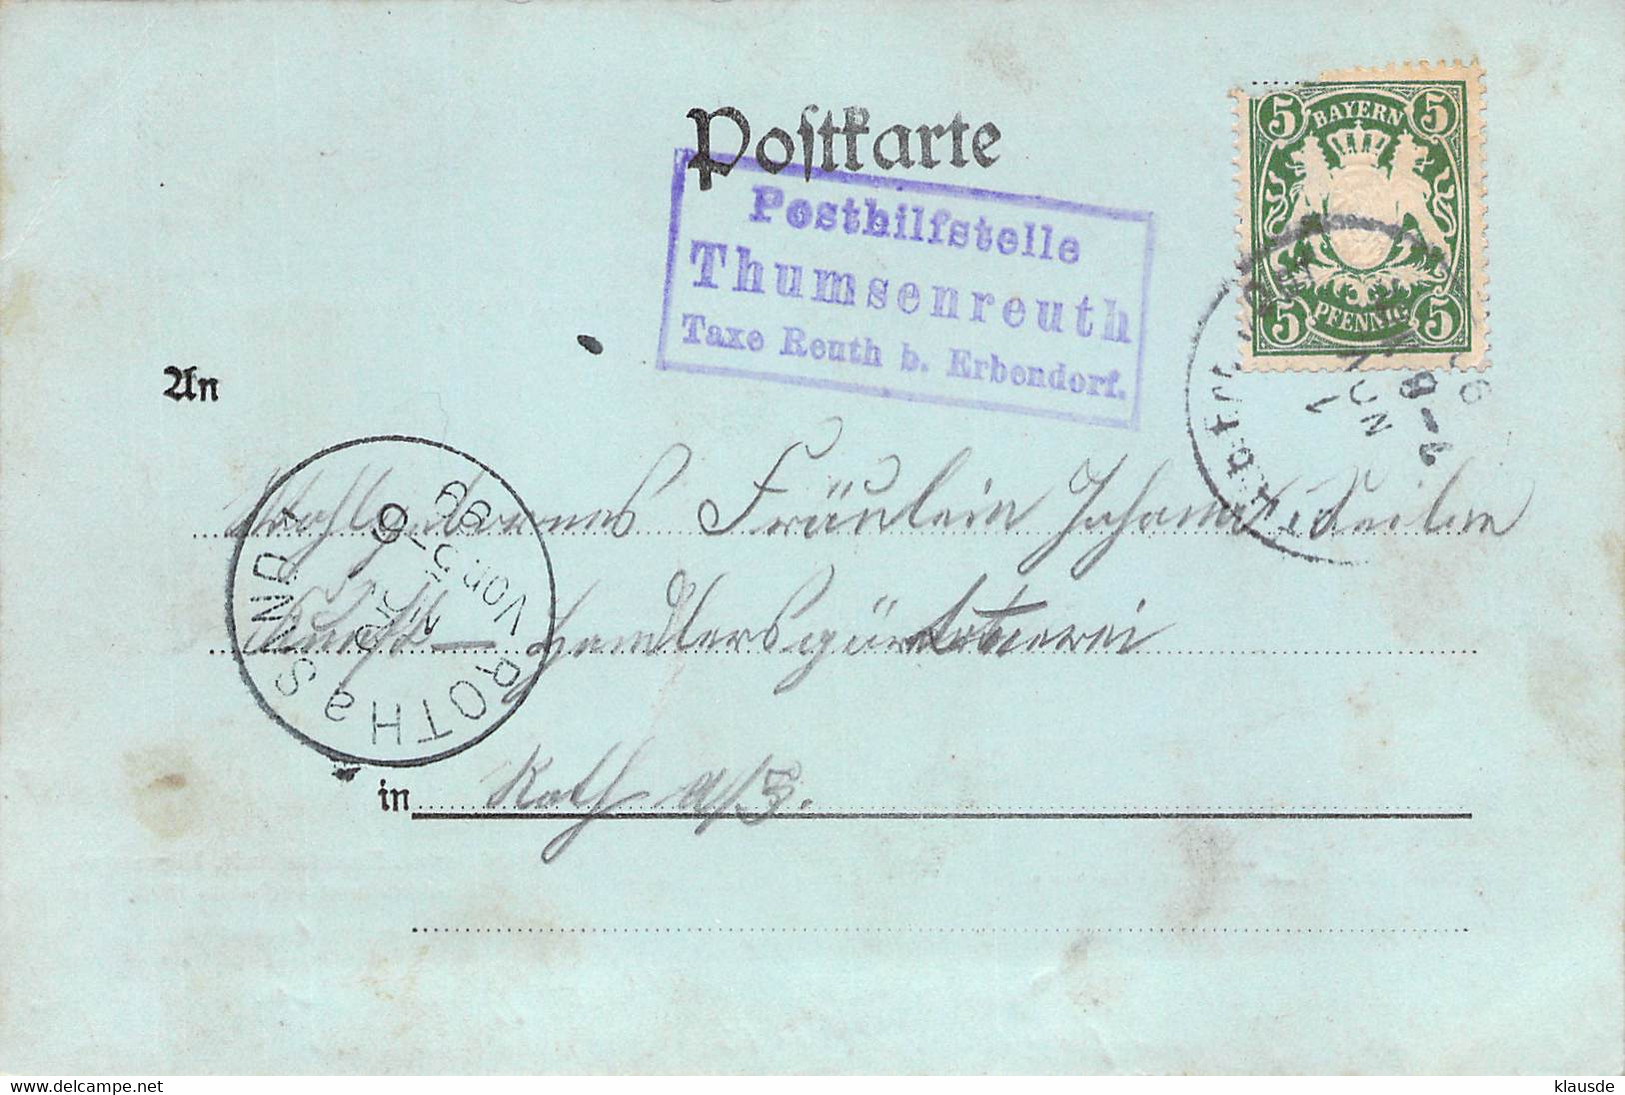 Gruß Aus Krummenaab  AKS 1899 - Tirschenreuth